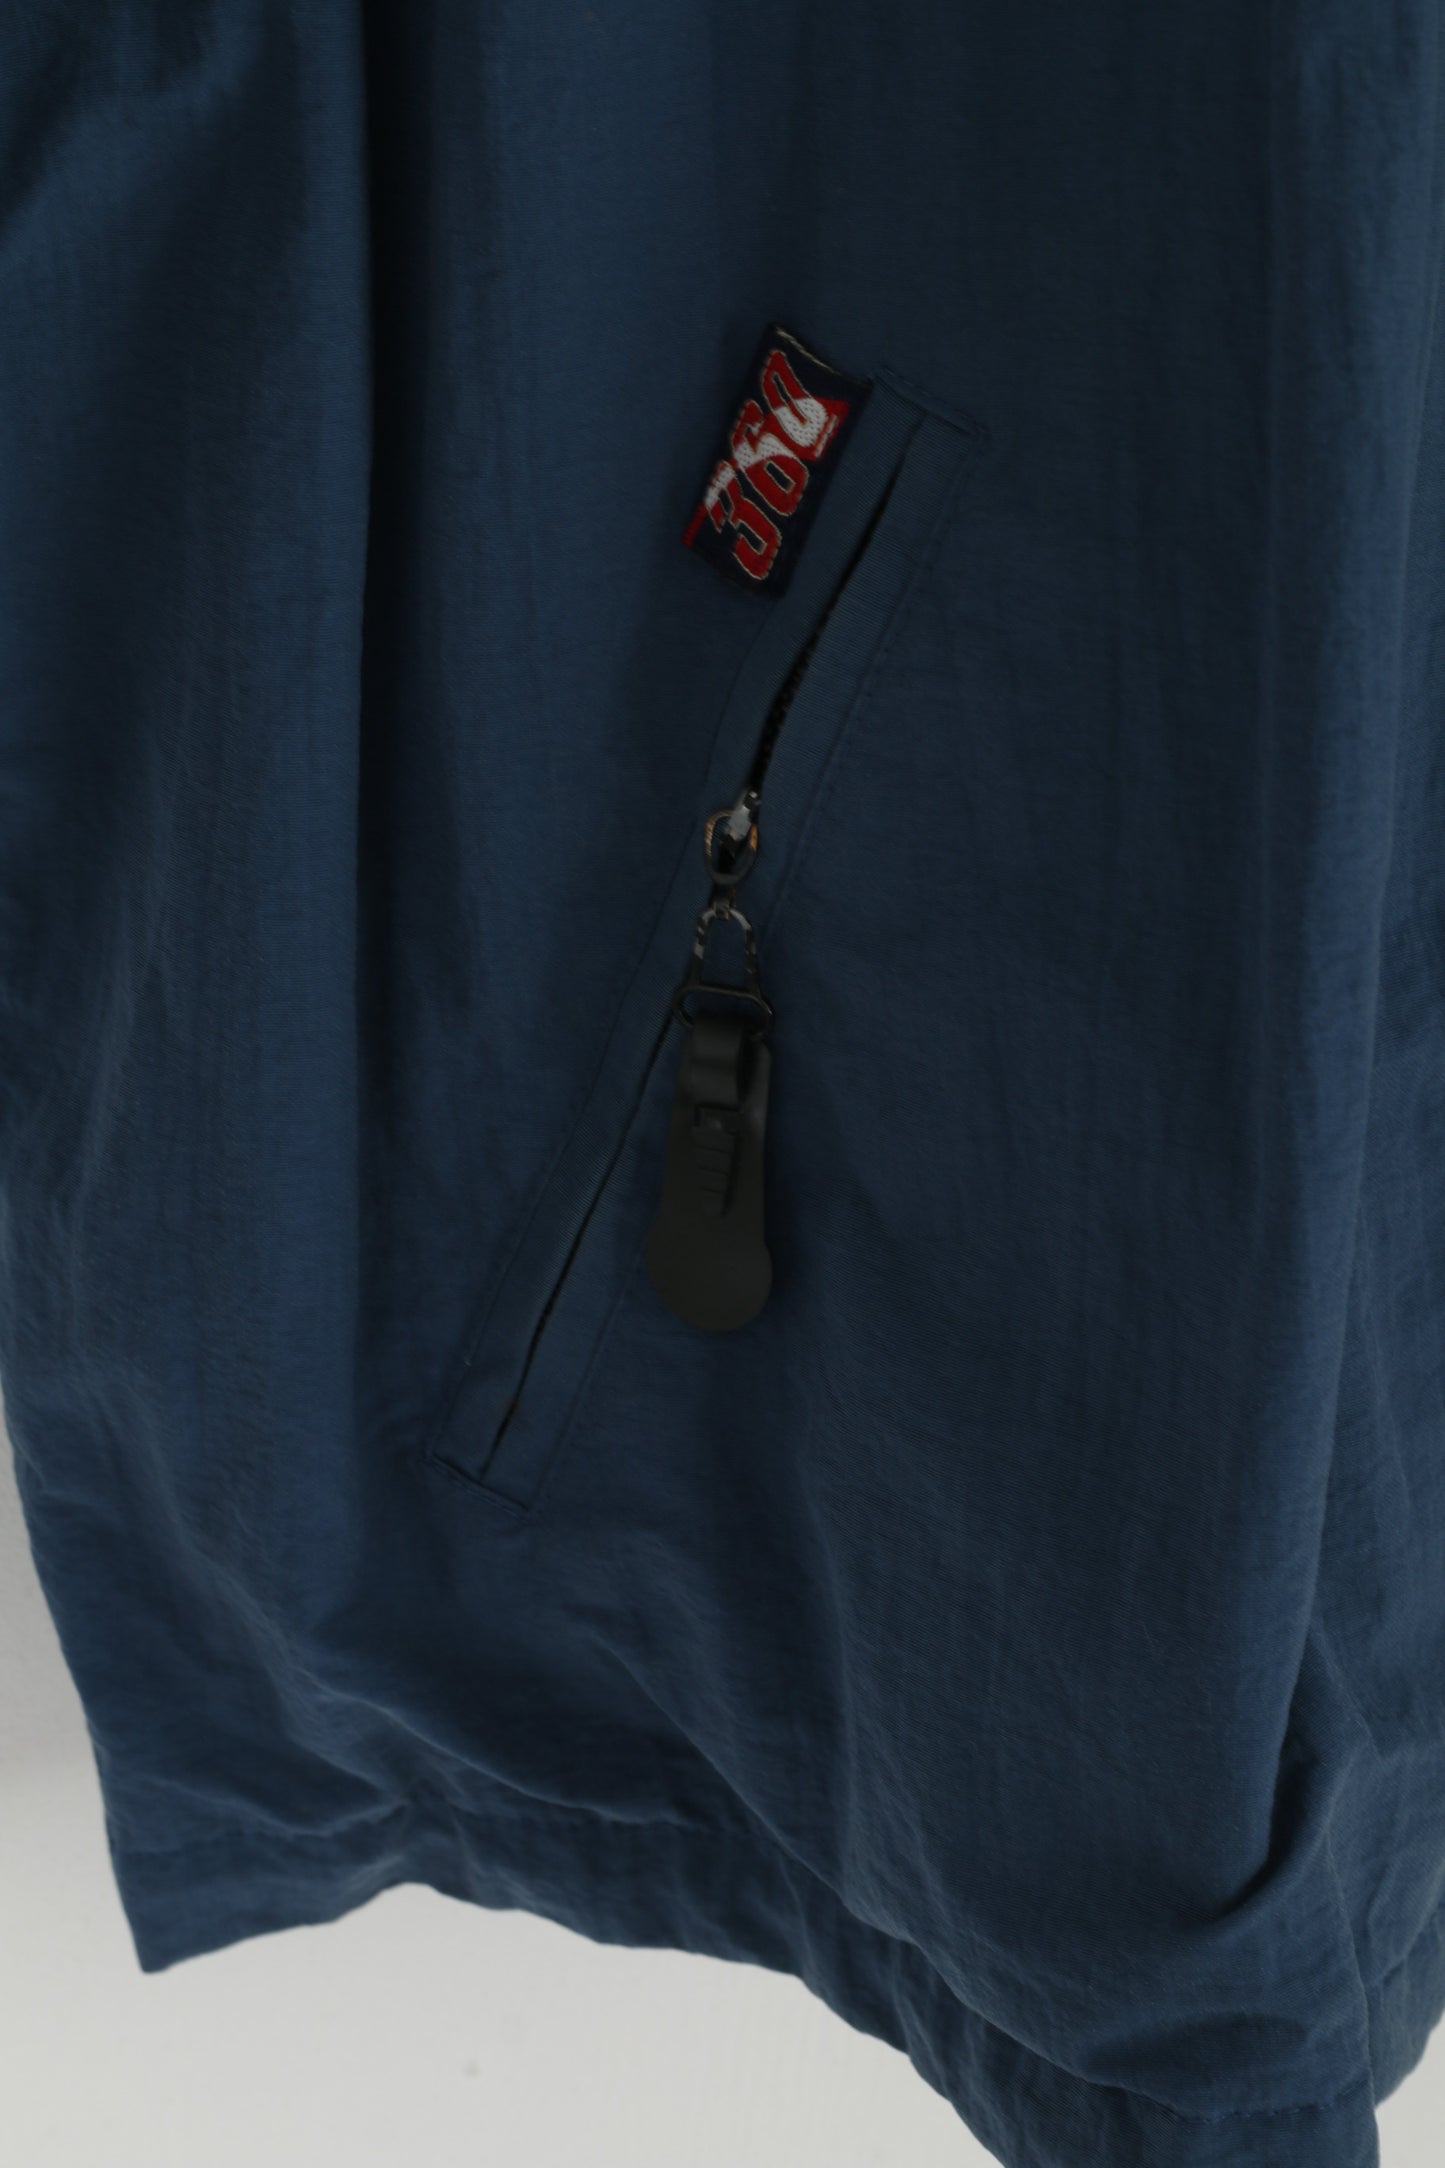 Giacca Puma da uomo L in nylon blu Perform 360 Top casual vintage con cerniera intera